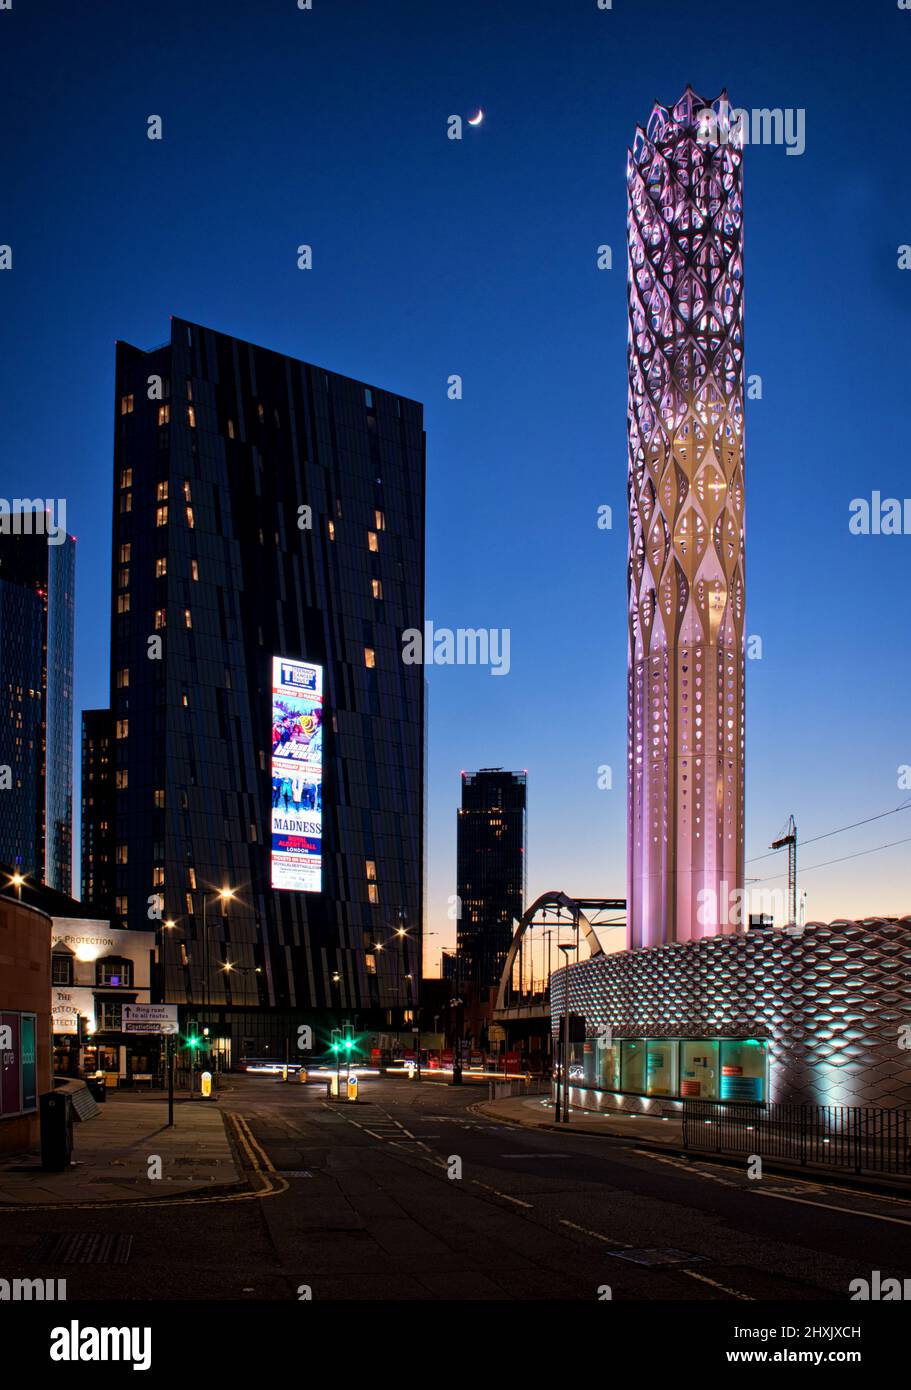 La Torre de la Luz, situada en el corazón de Manchester, proporciona calor y energía sostenibles a muchos edificios emblemáticos del centro de la ciudad. Foto de stock